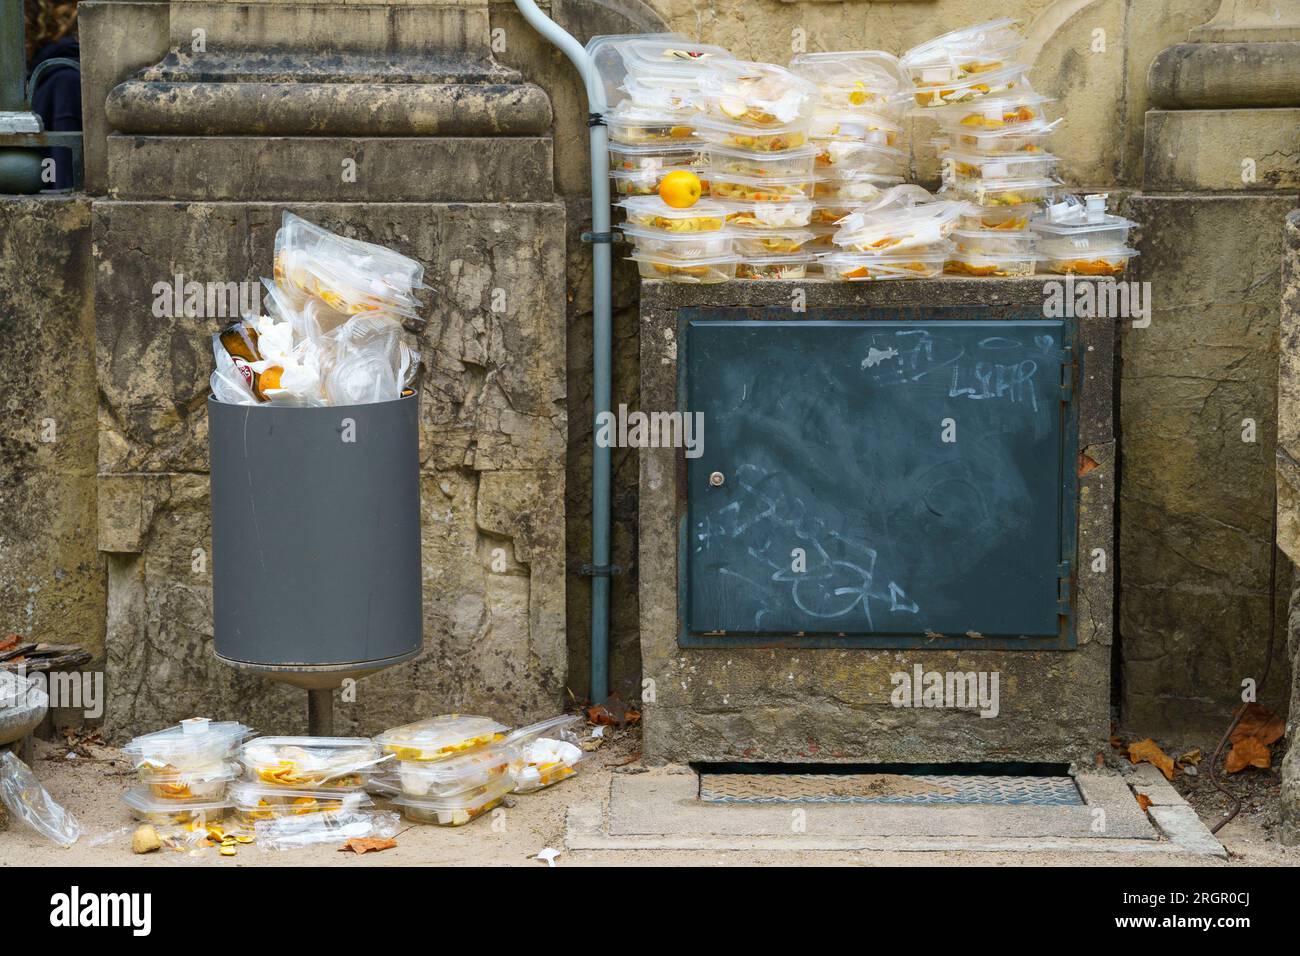 Contenants alimentaires jetables en plastique empilés à côté d'une poubelle survolée Banque D'Images